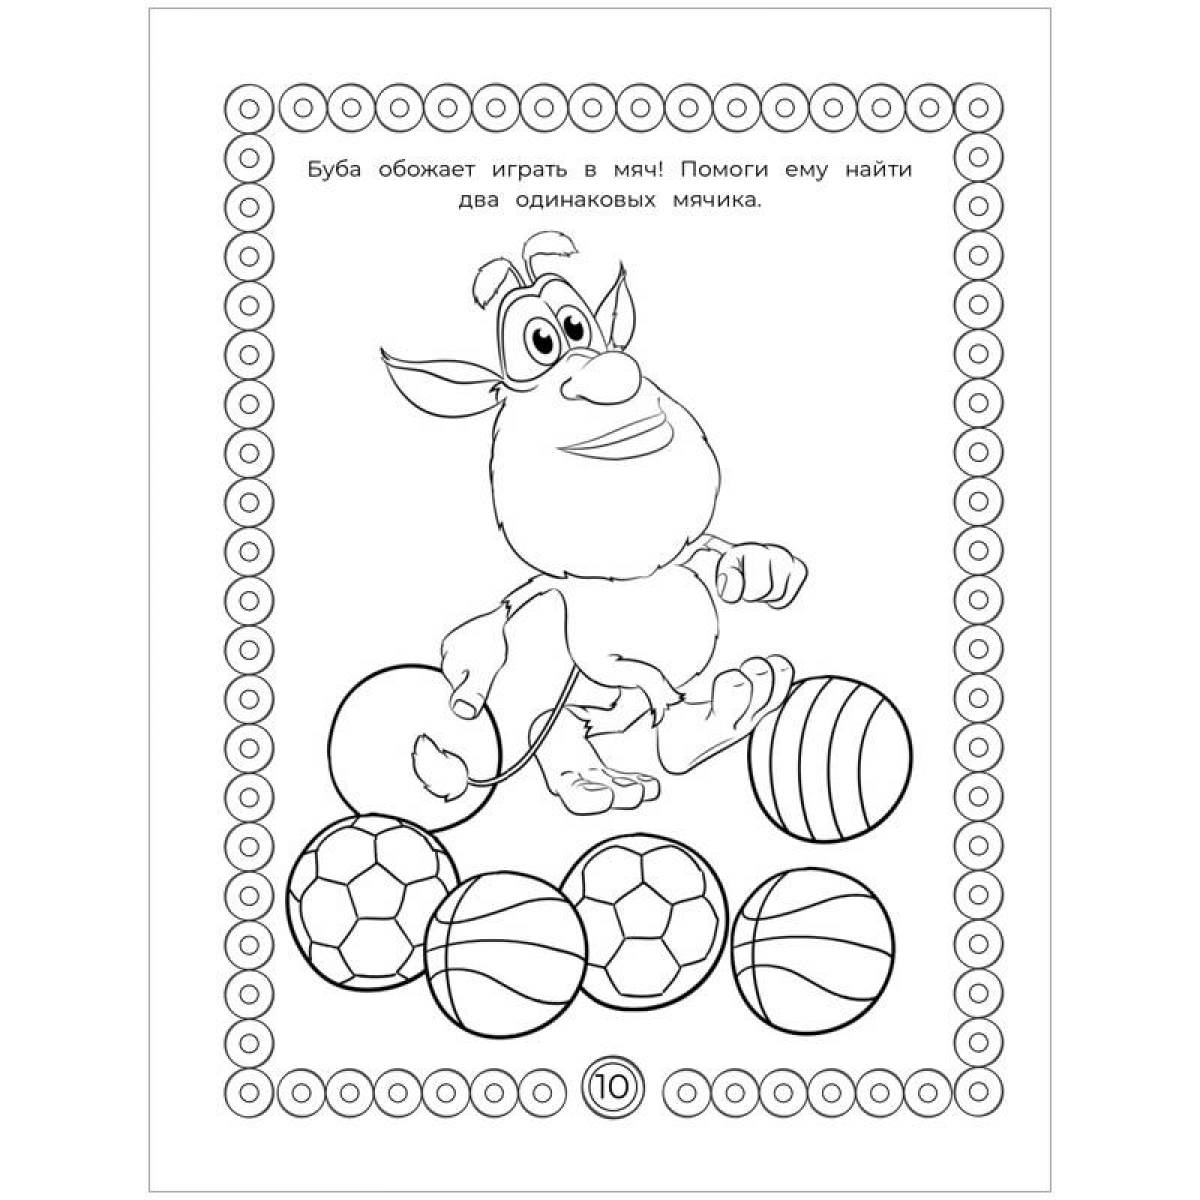 A fun buba coloring book for kids